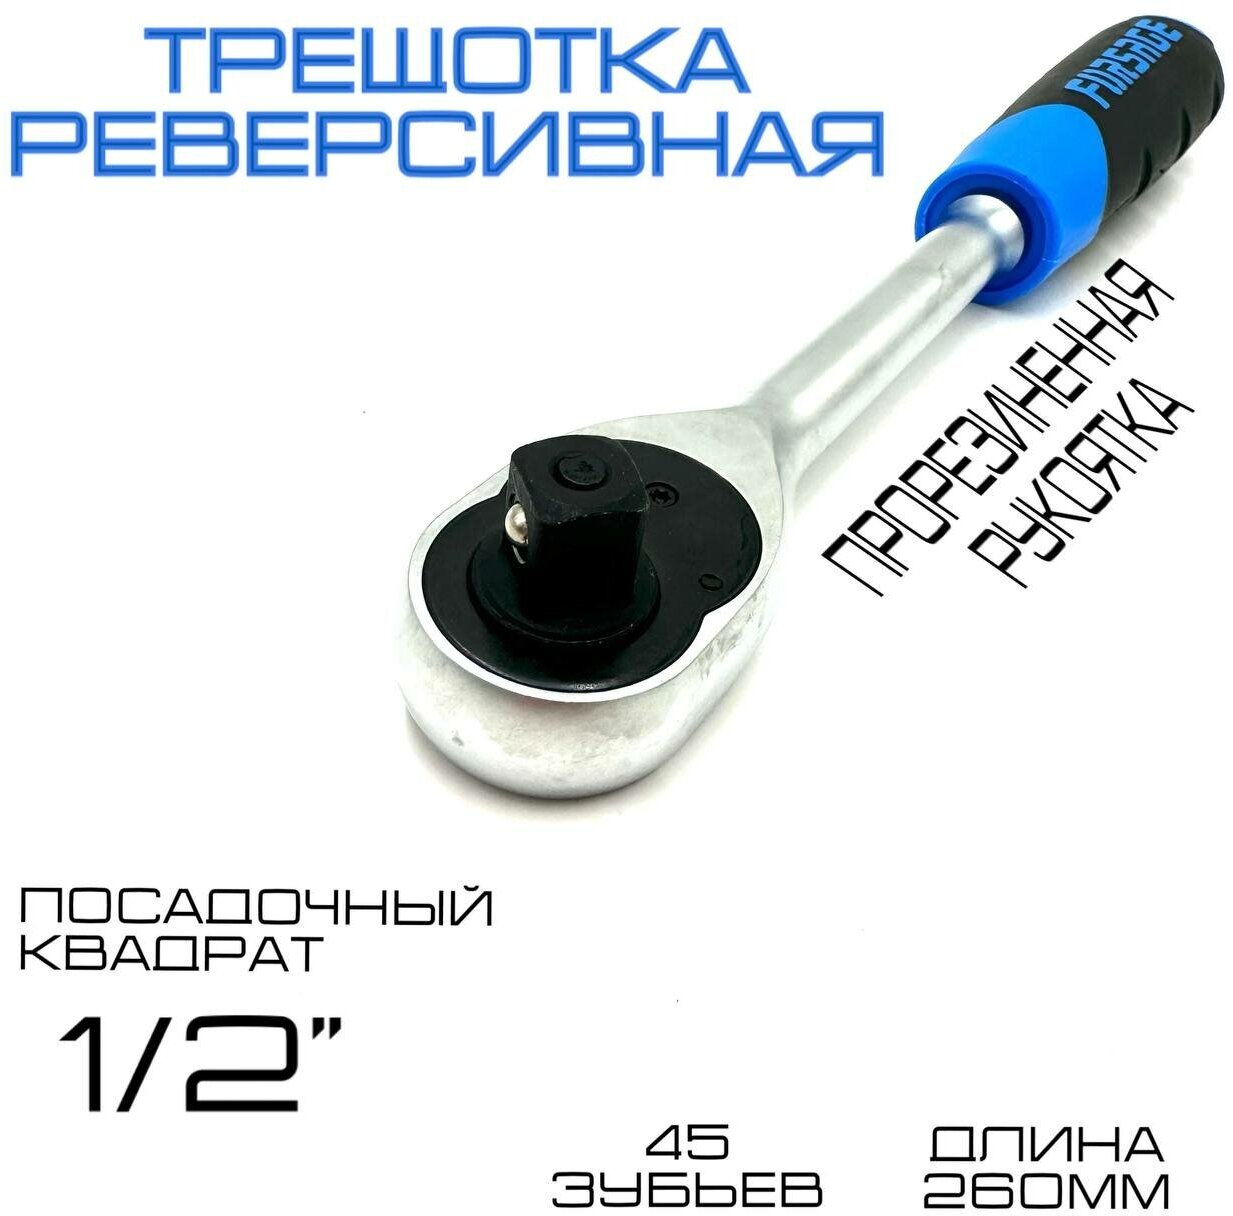 Forsage Трещотка реверсивная 1/2"L-260мм с резиновой ручкой (45зуб) Forsage F-80243